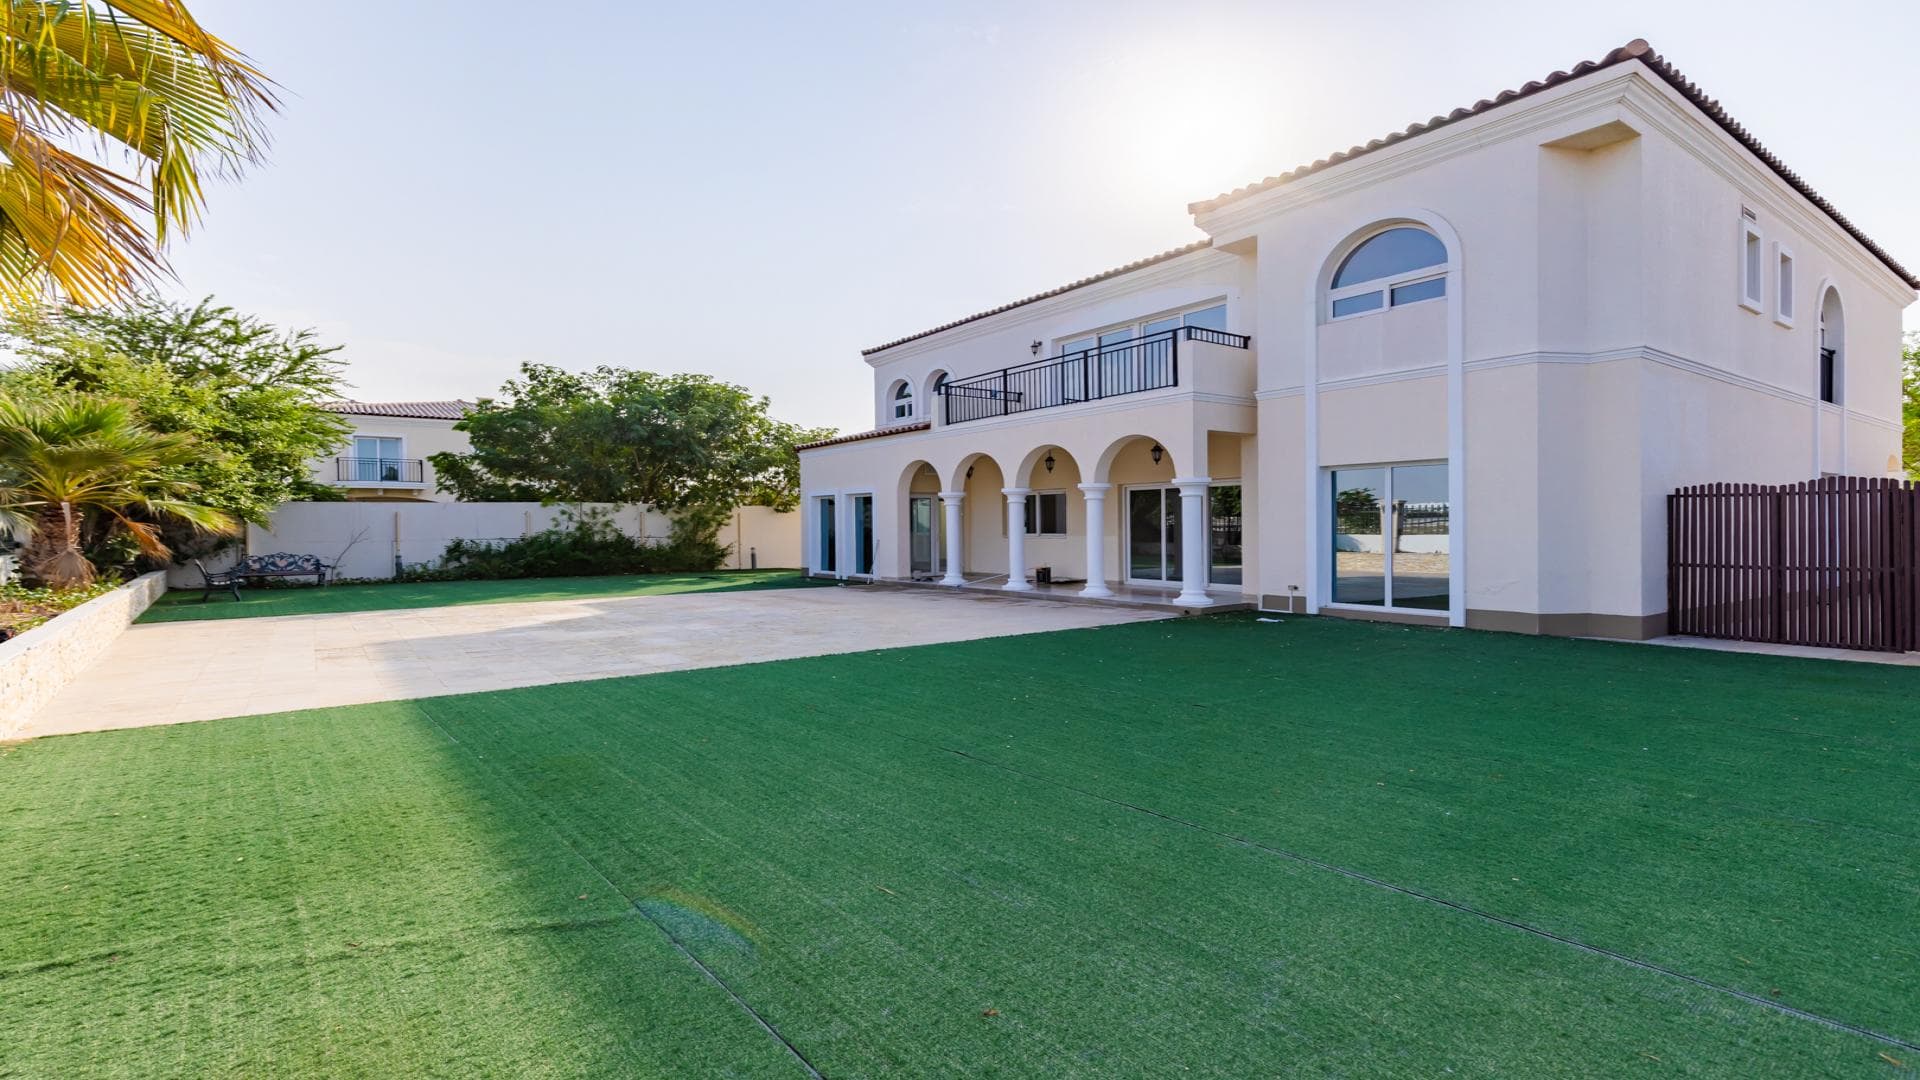 5 Bedroom Villa For Rent Al Thamam 36 Lp39013 235b7e11d38e1400.jpg